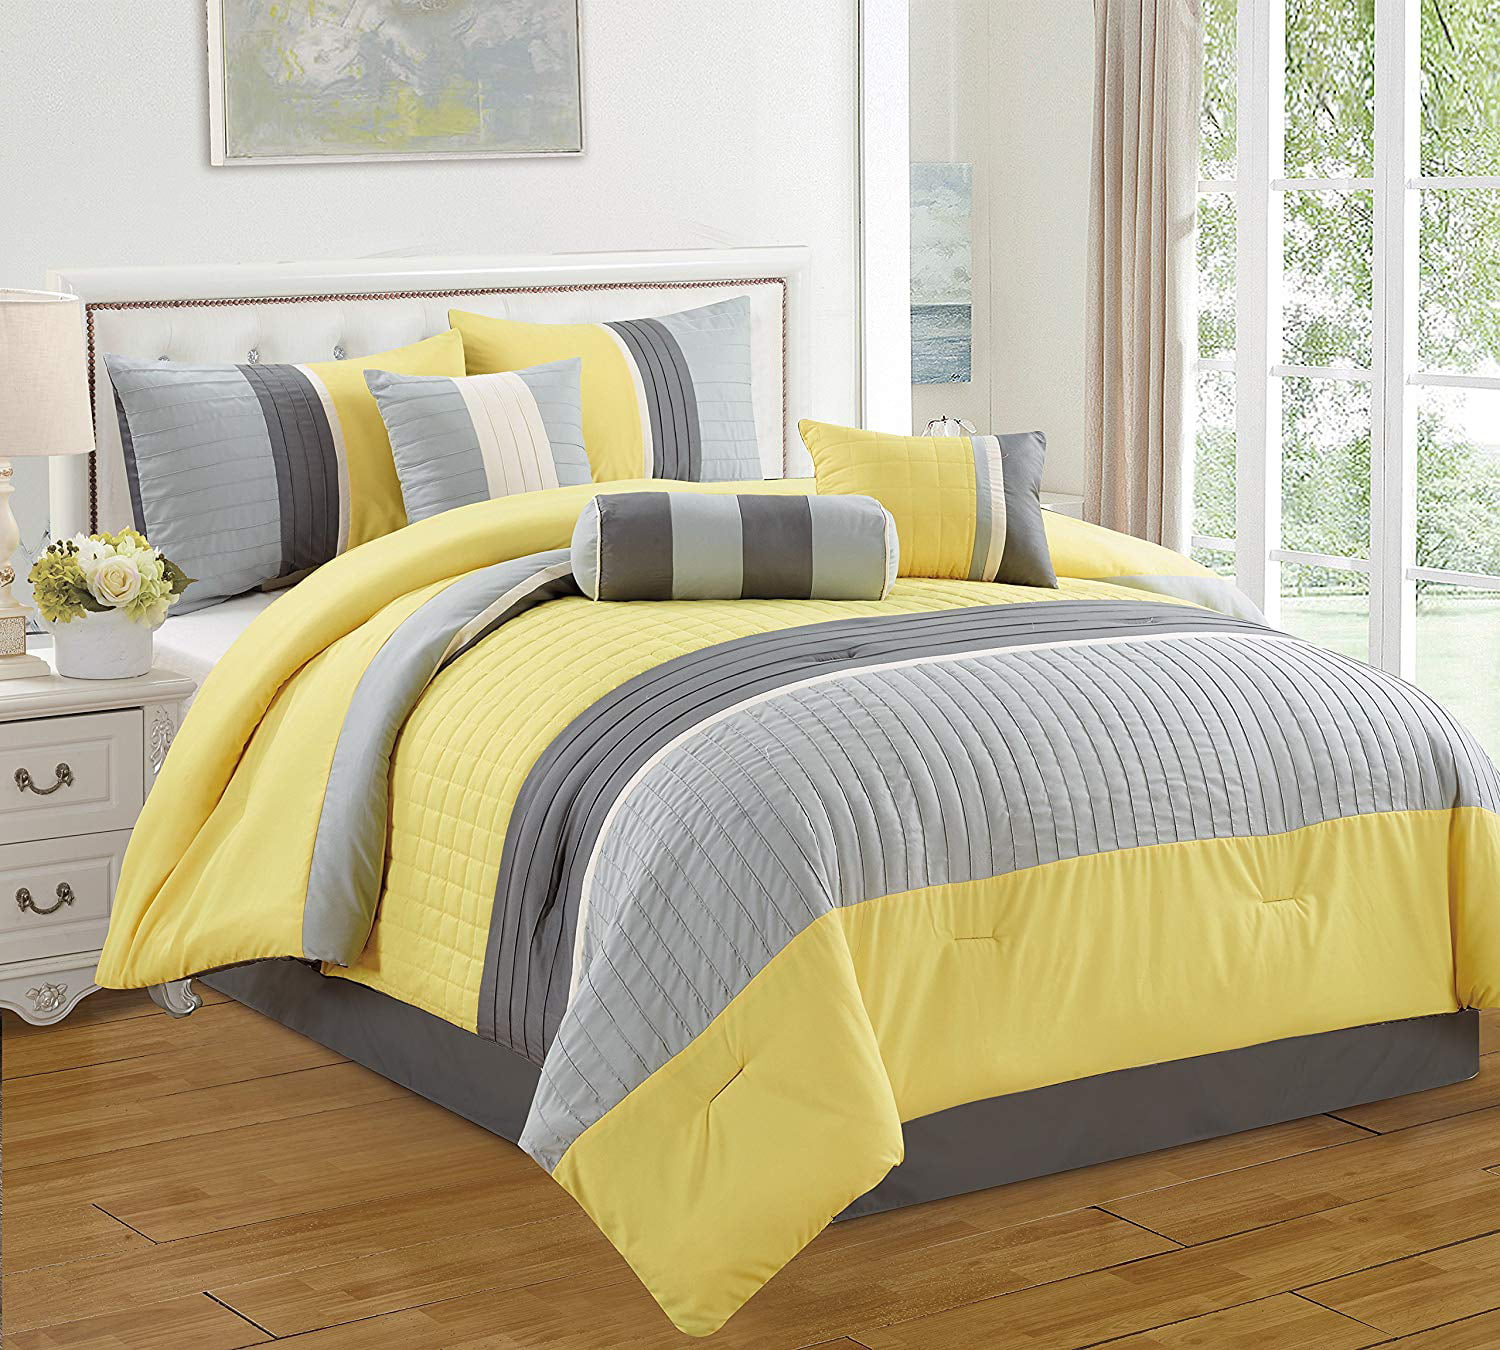 HGMart Bedding Comforter Set Bed In A Bag 